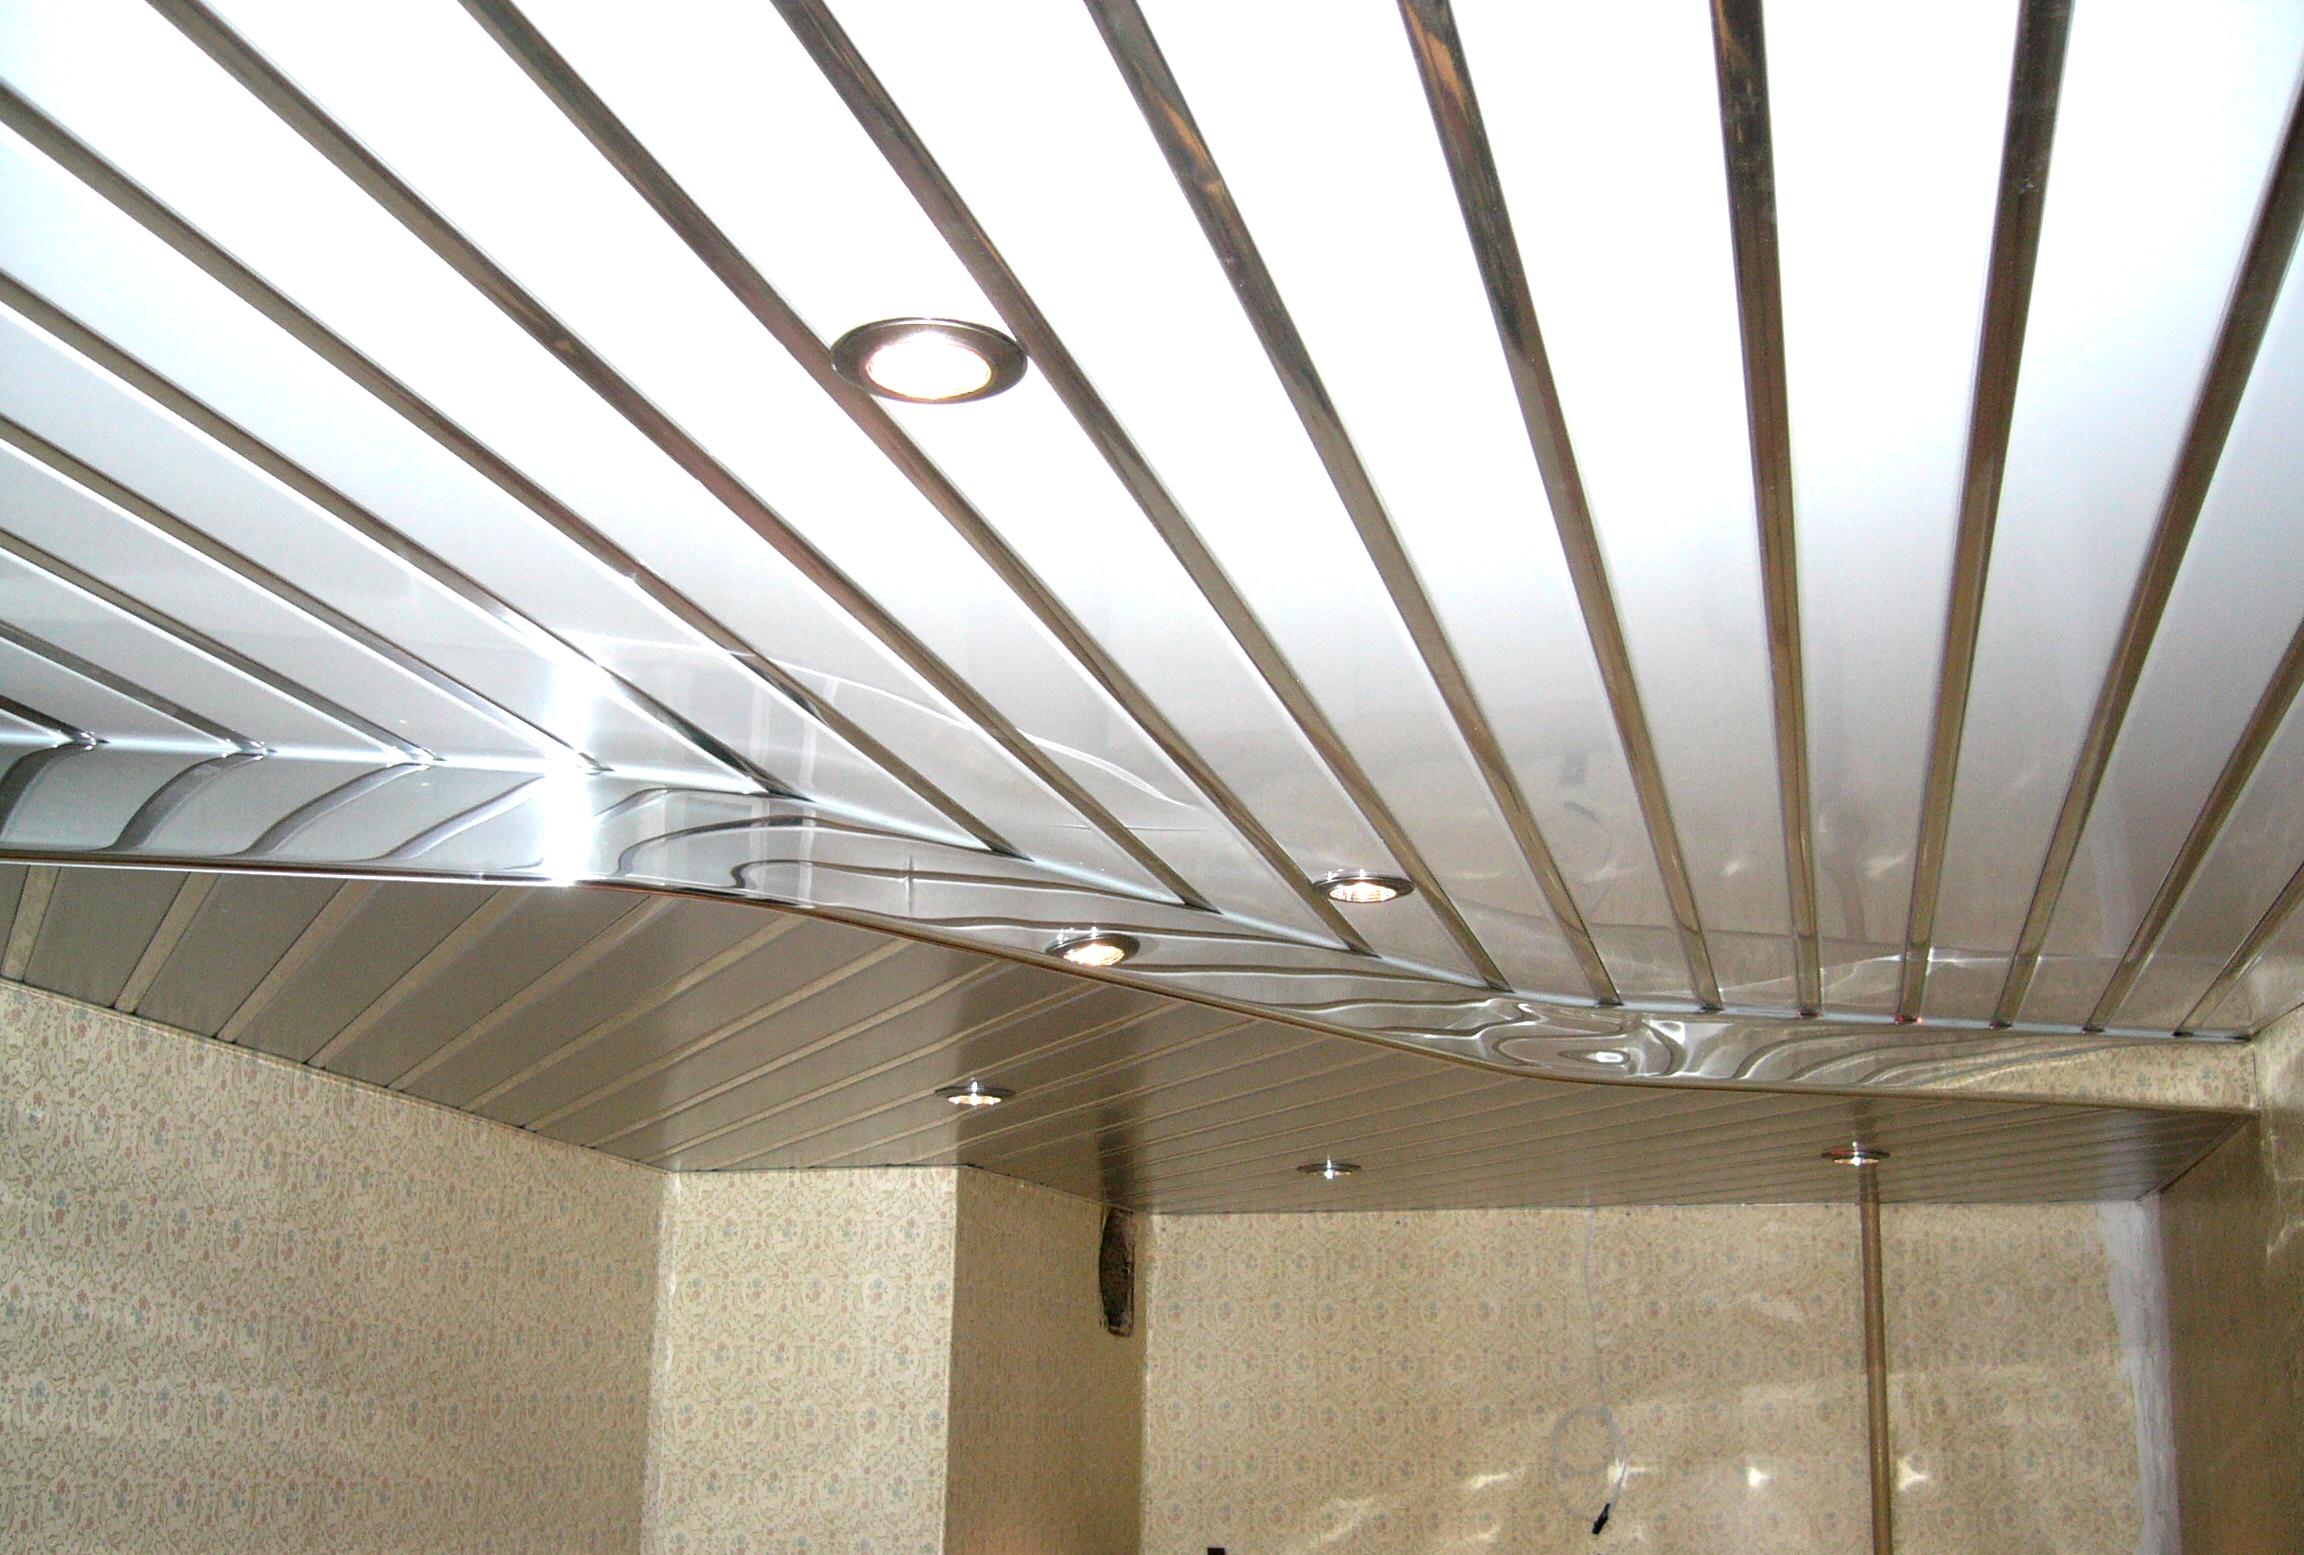 Подвесные потолки из алюминиевых панелей: преимущества, сборка.